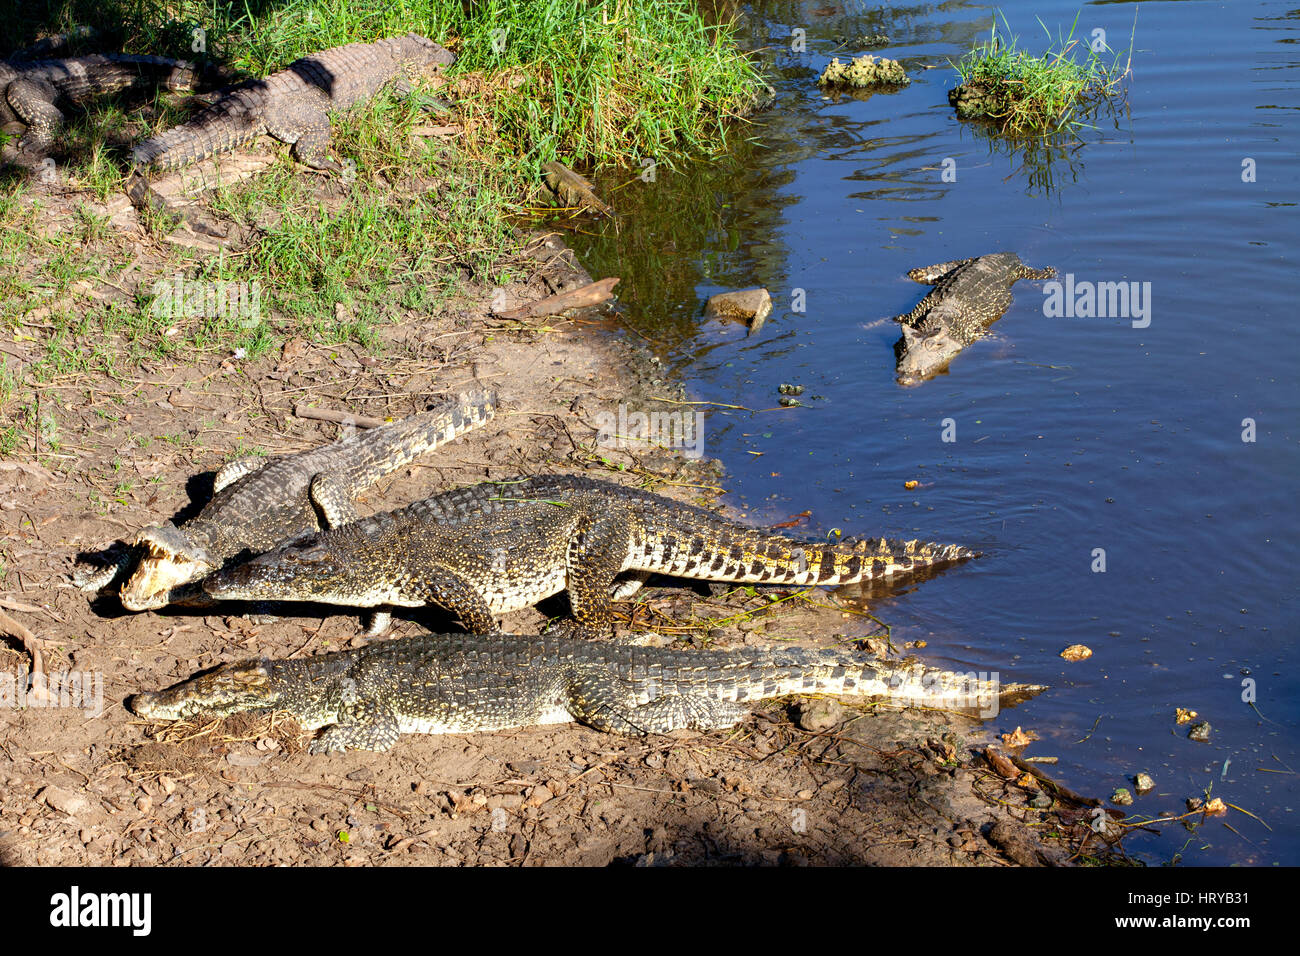 Les crocodiles de La Ferme Cuba Playa Larga, près de la Baie des Cochons, Matanzas, Cuba. Banque D'Images